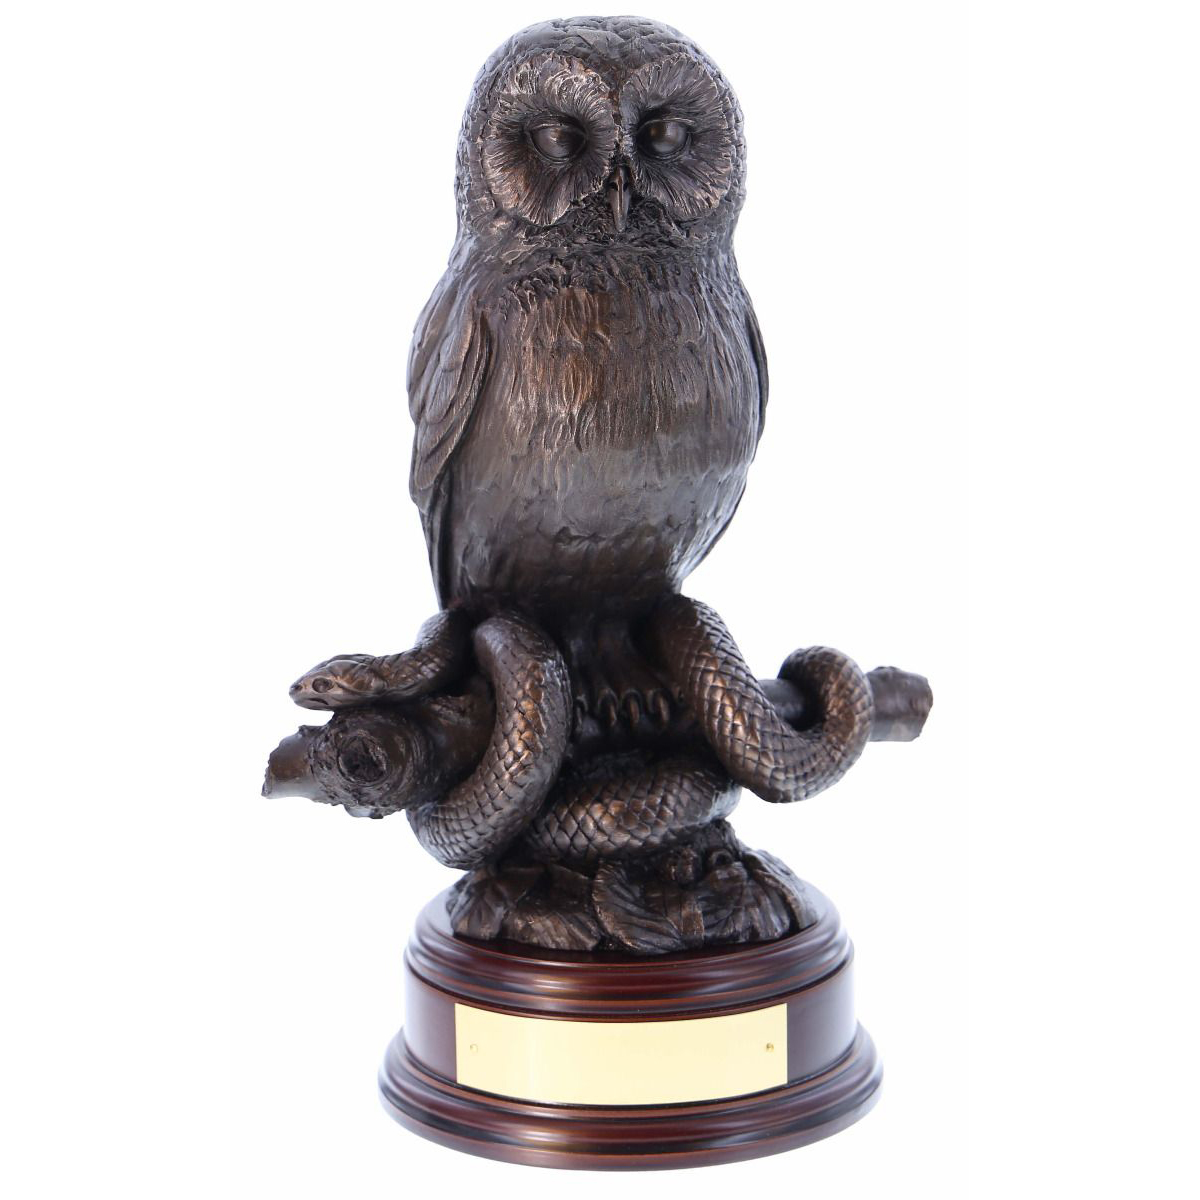 Vintage Owl Figurines